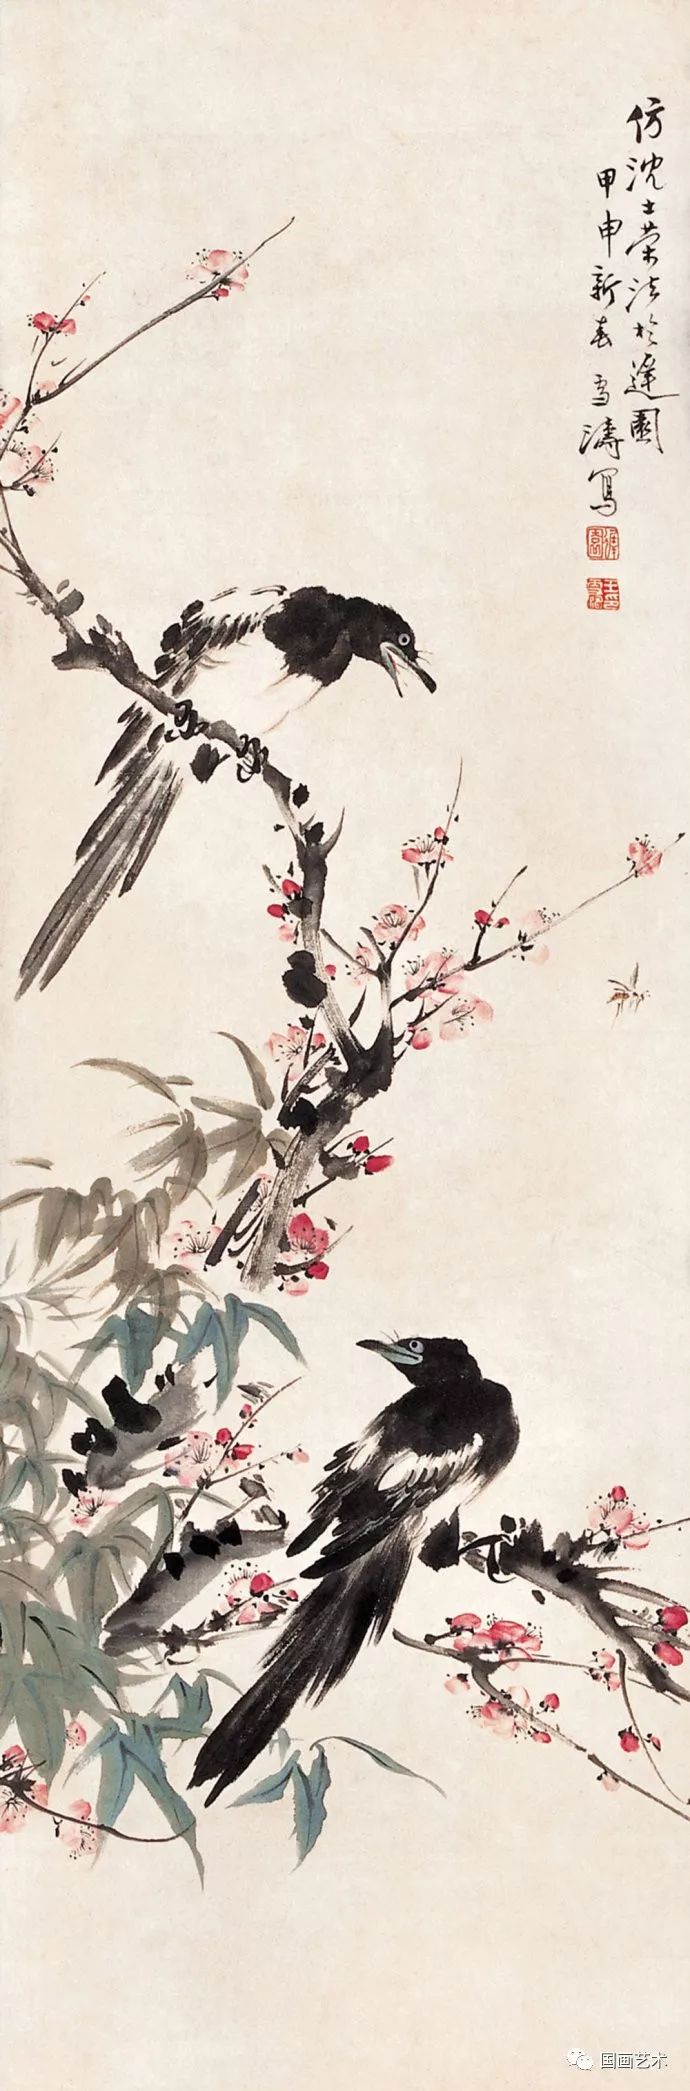 字晓封,号迟园,河北成安人,中国现代著名小写意花鸟画家